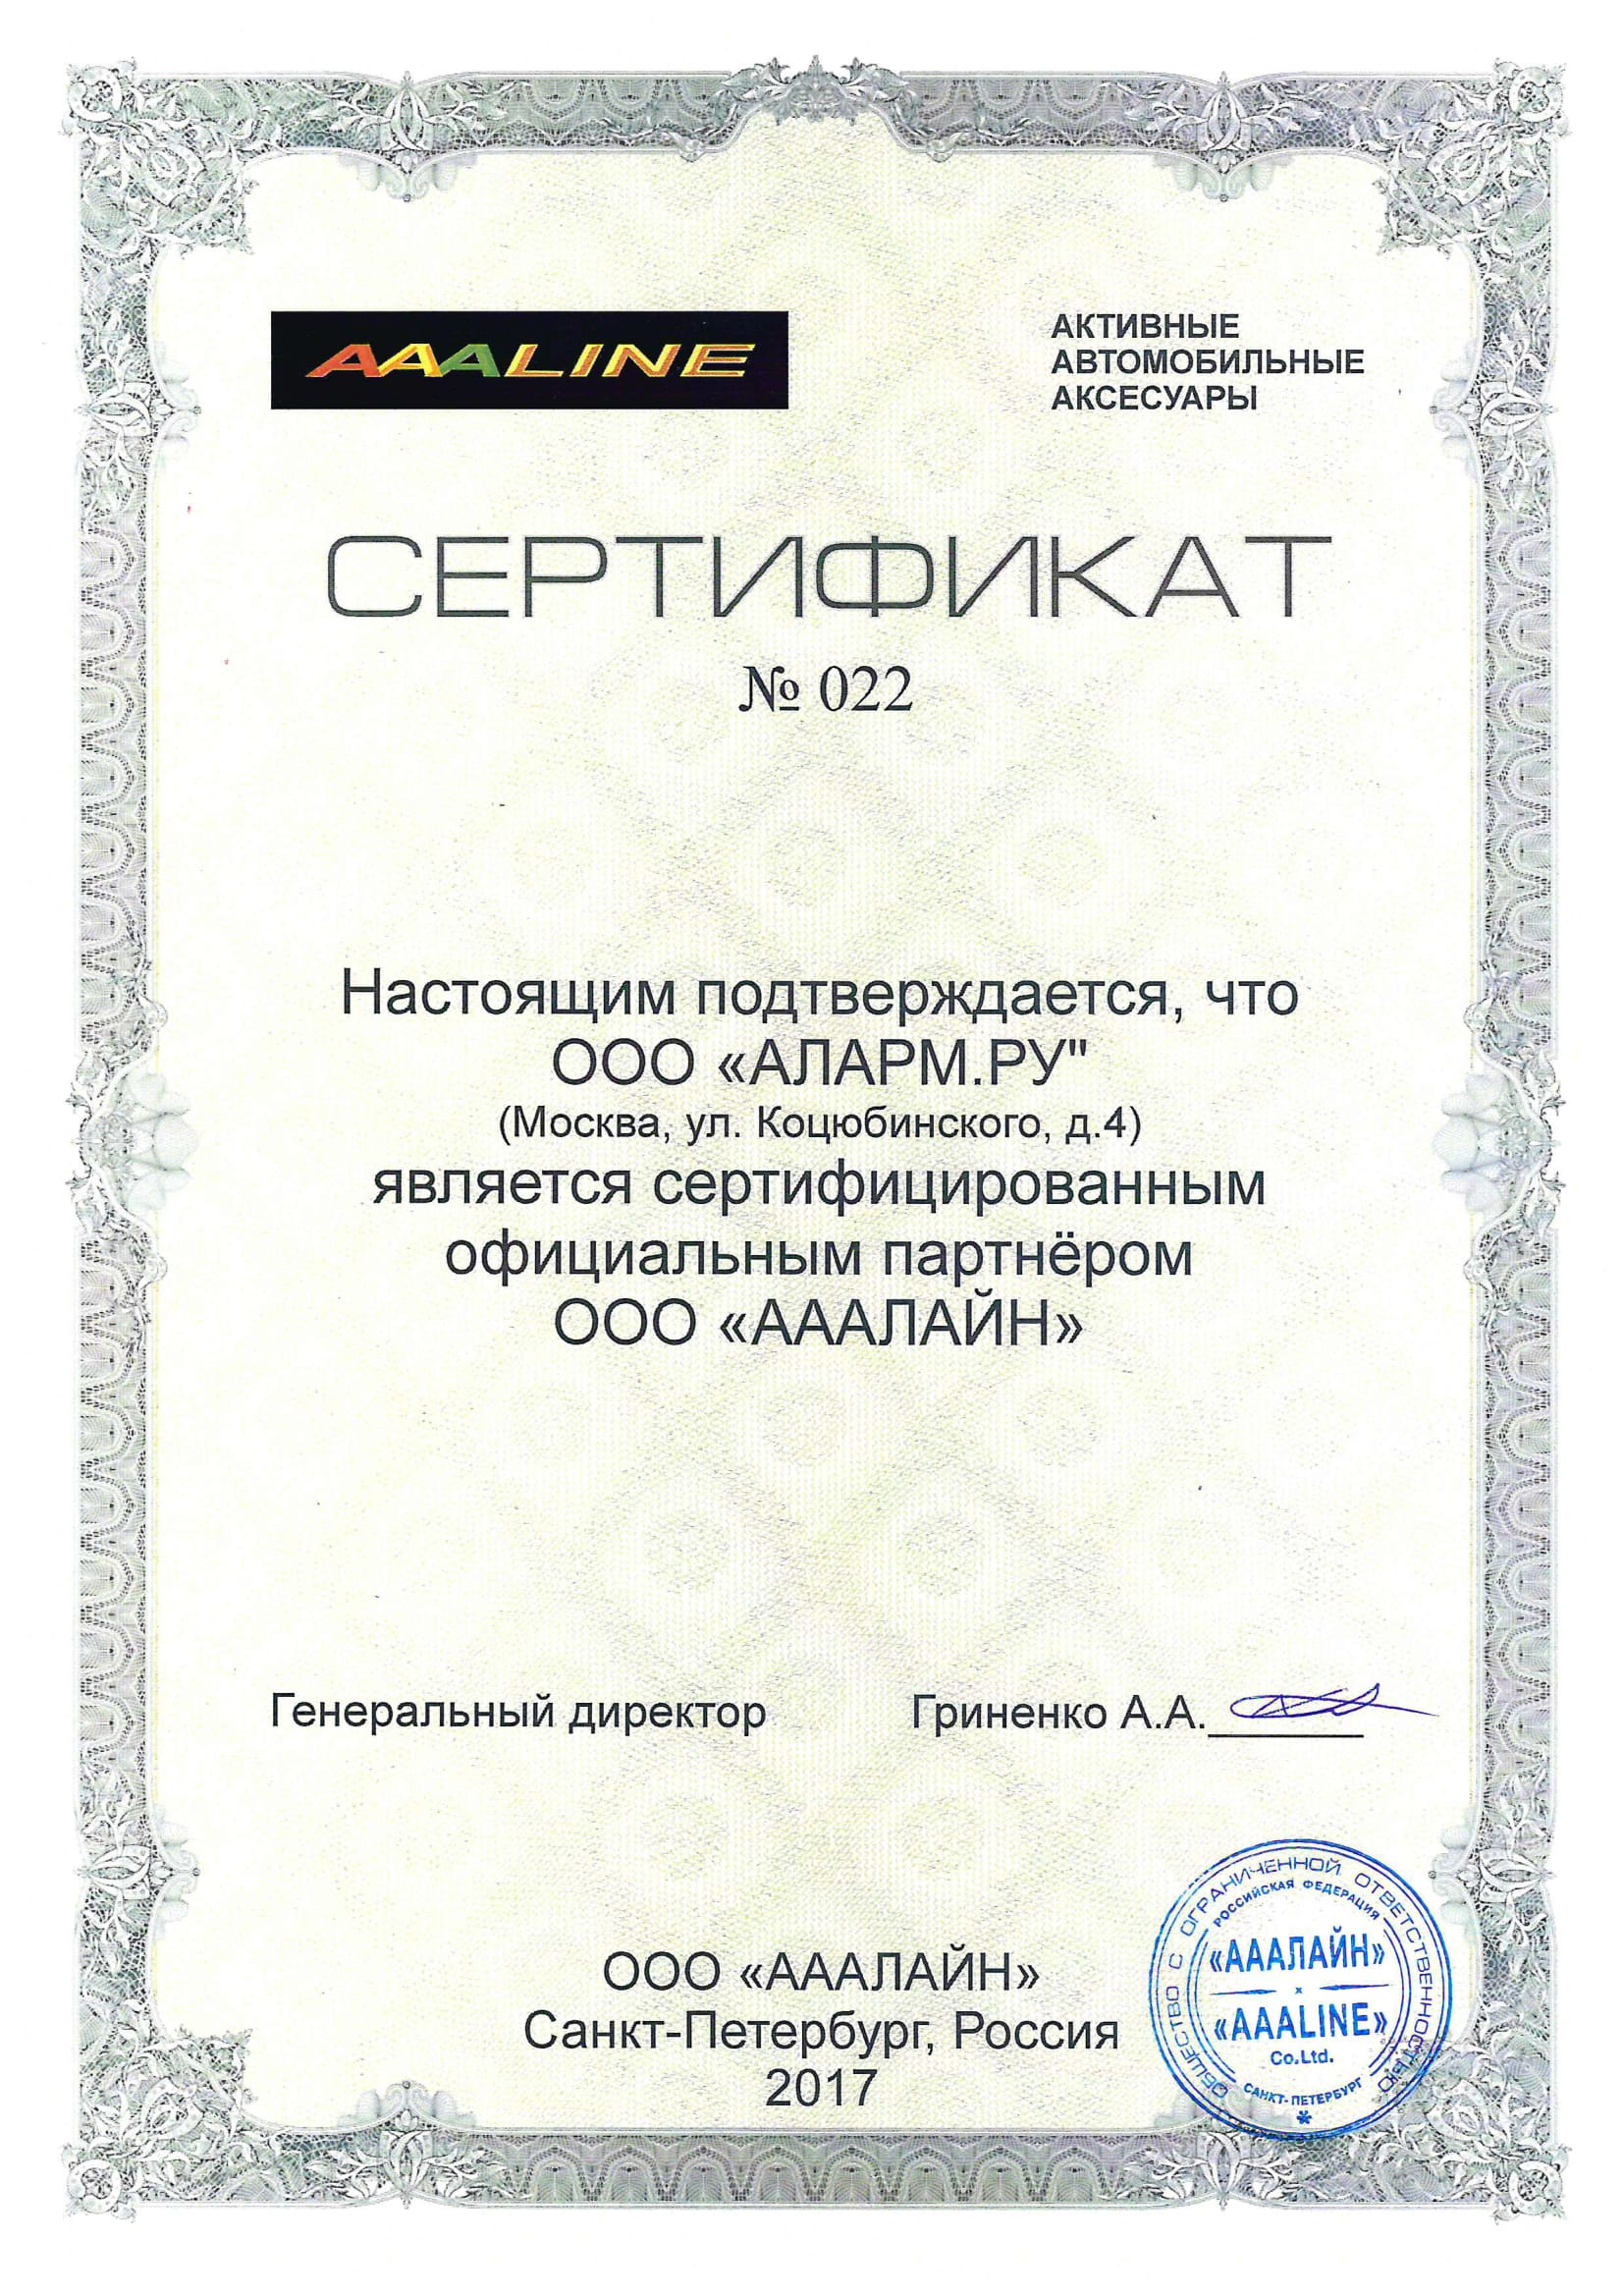 Сертифицированный официальный партнер